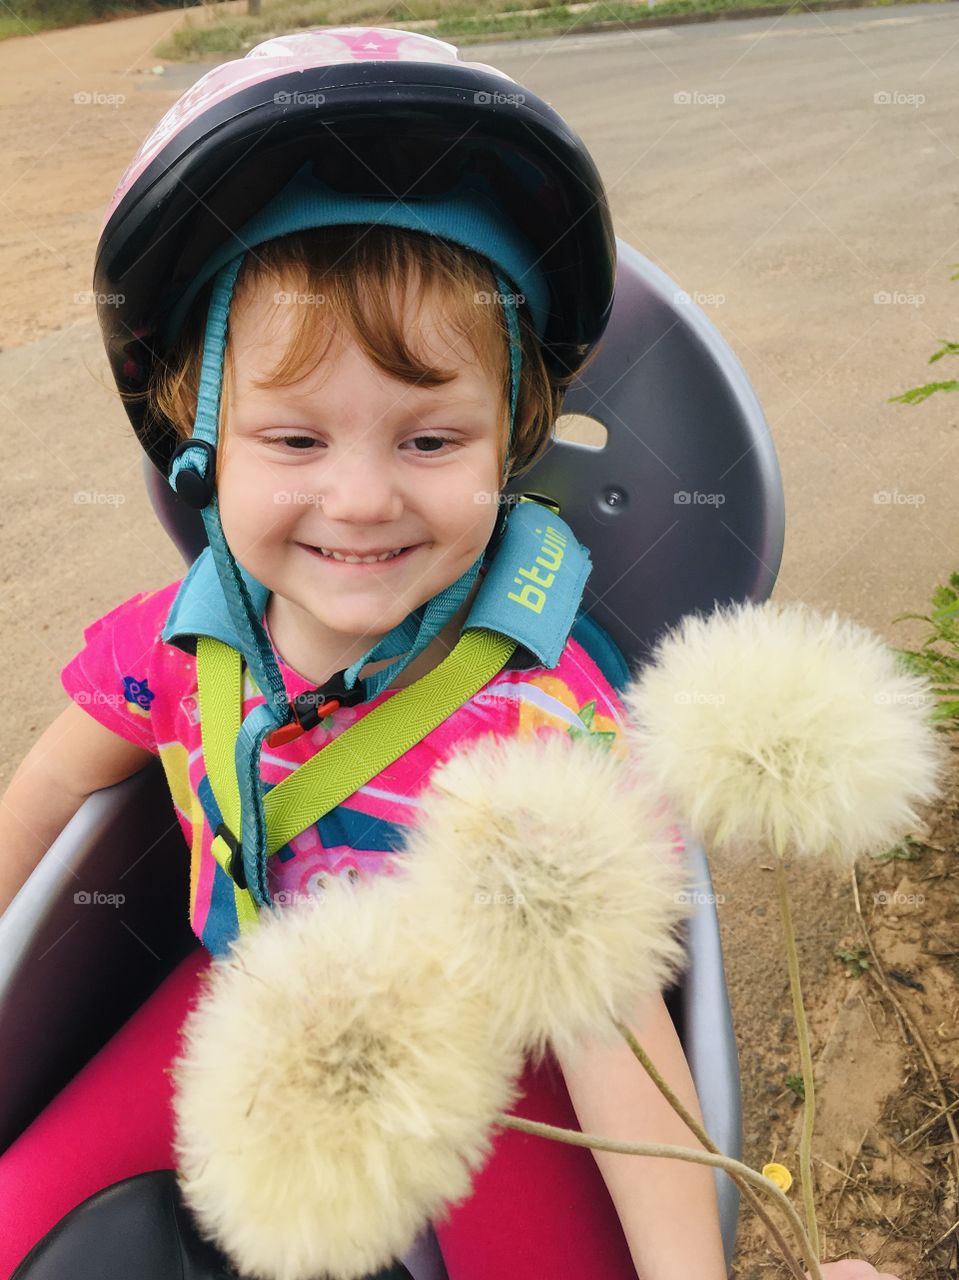 🇺🇸 What makes me smile? Cycling with my daughter, seeing her happiness picking dandelions. /🇧🇷 O que me faz sorrir? Passear de bicicleta com minha filha, vendo a felicidade dela colhendo dentes-de-leão.